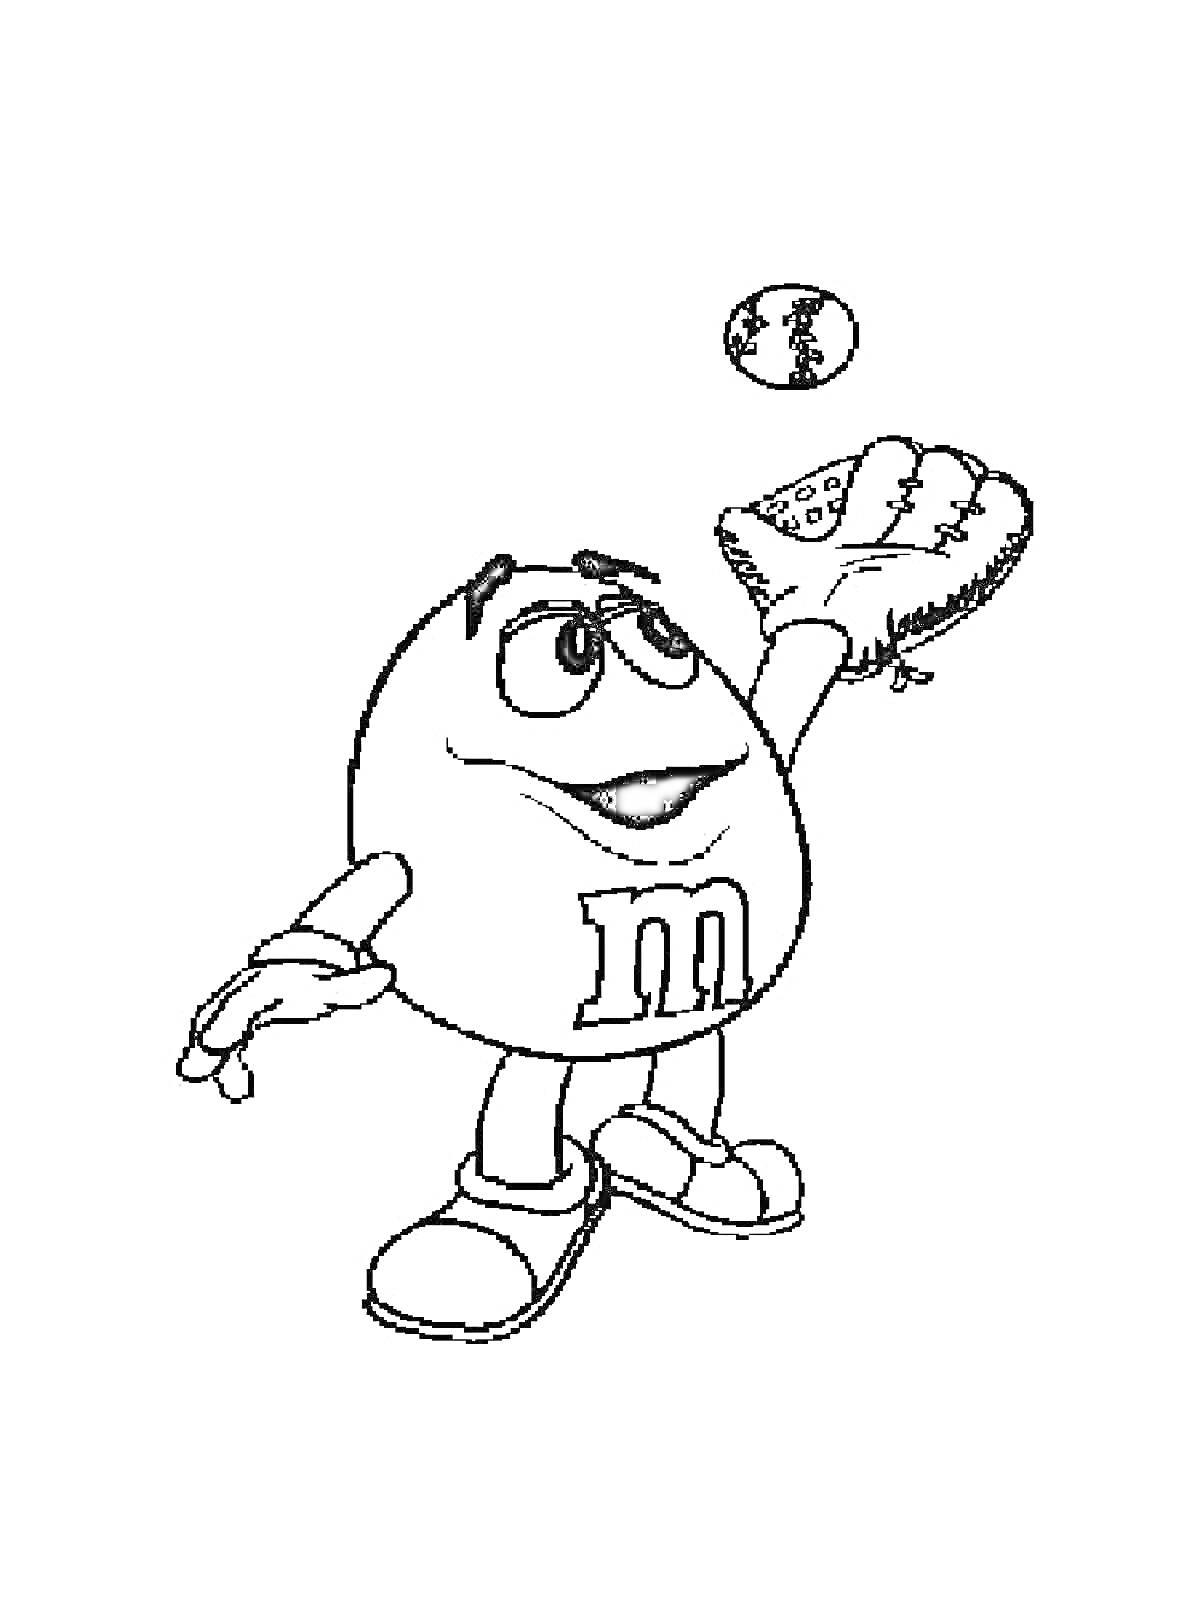 Раскраска M&M's персонаж с бейсбольной перчаткой и мячом